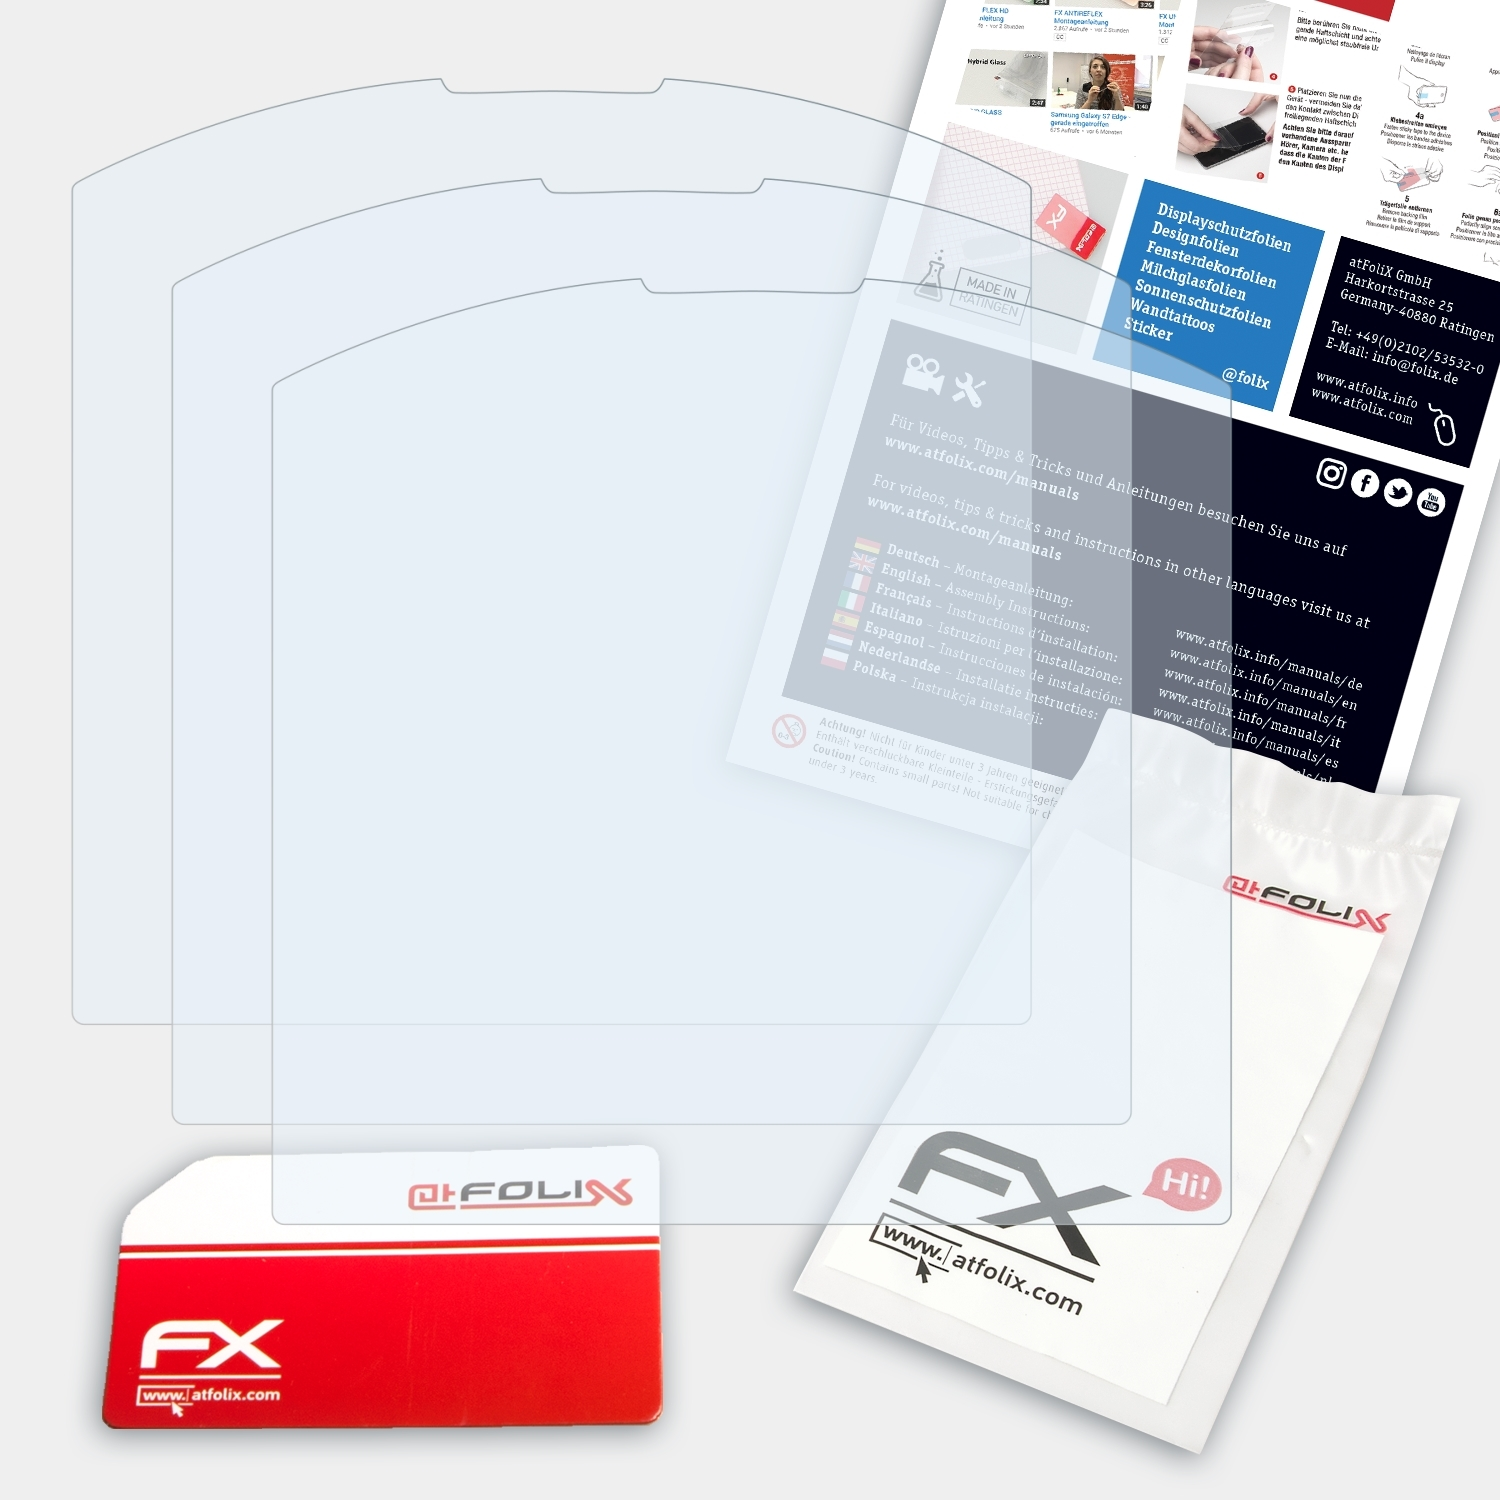 Pure) 3x ATFOLIX FX-Clear Emporia Displayschutz(für